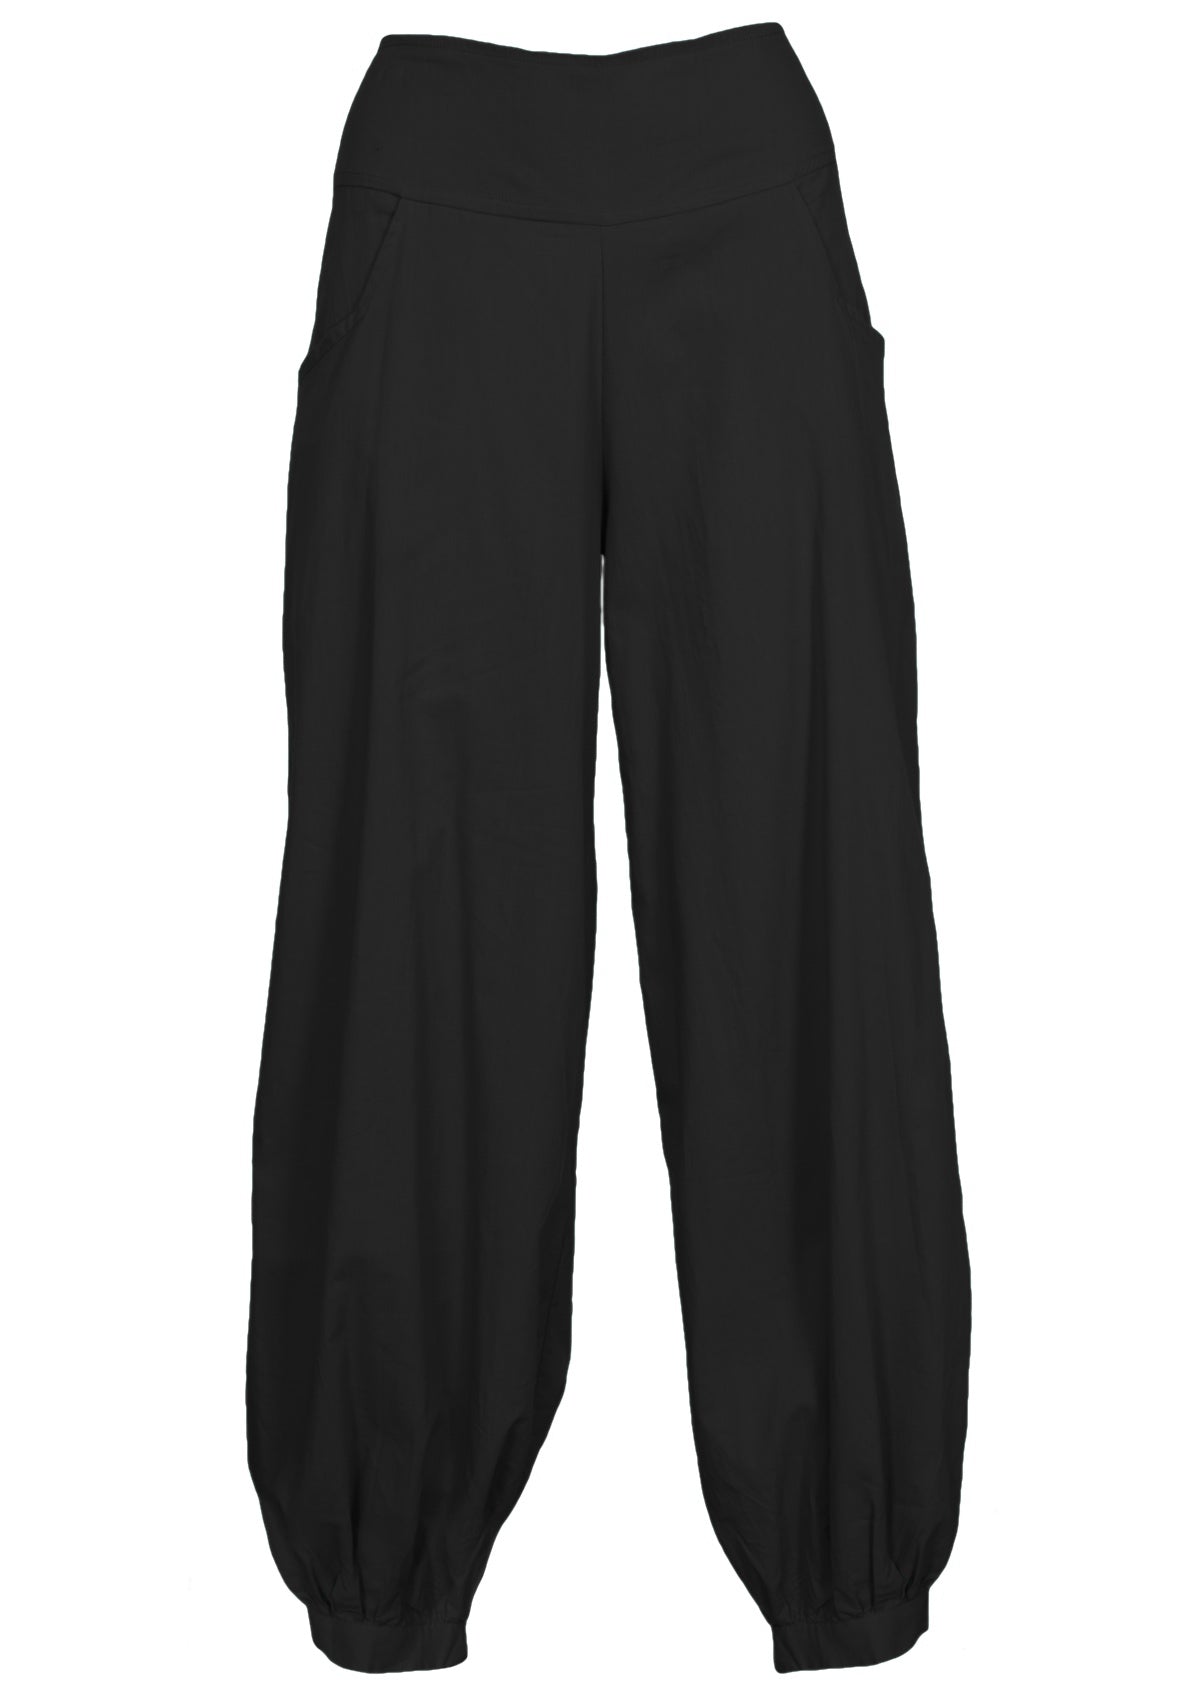 simple cotton women's pant black